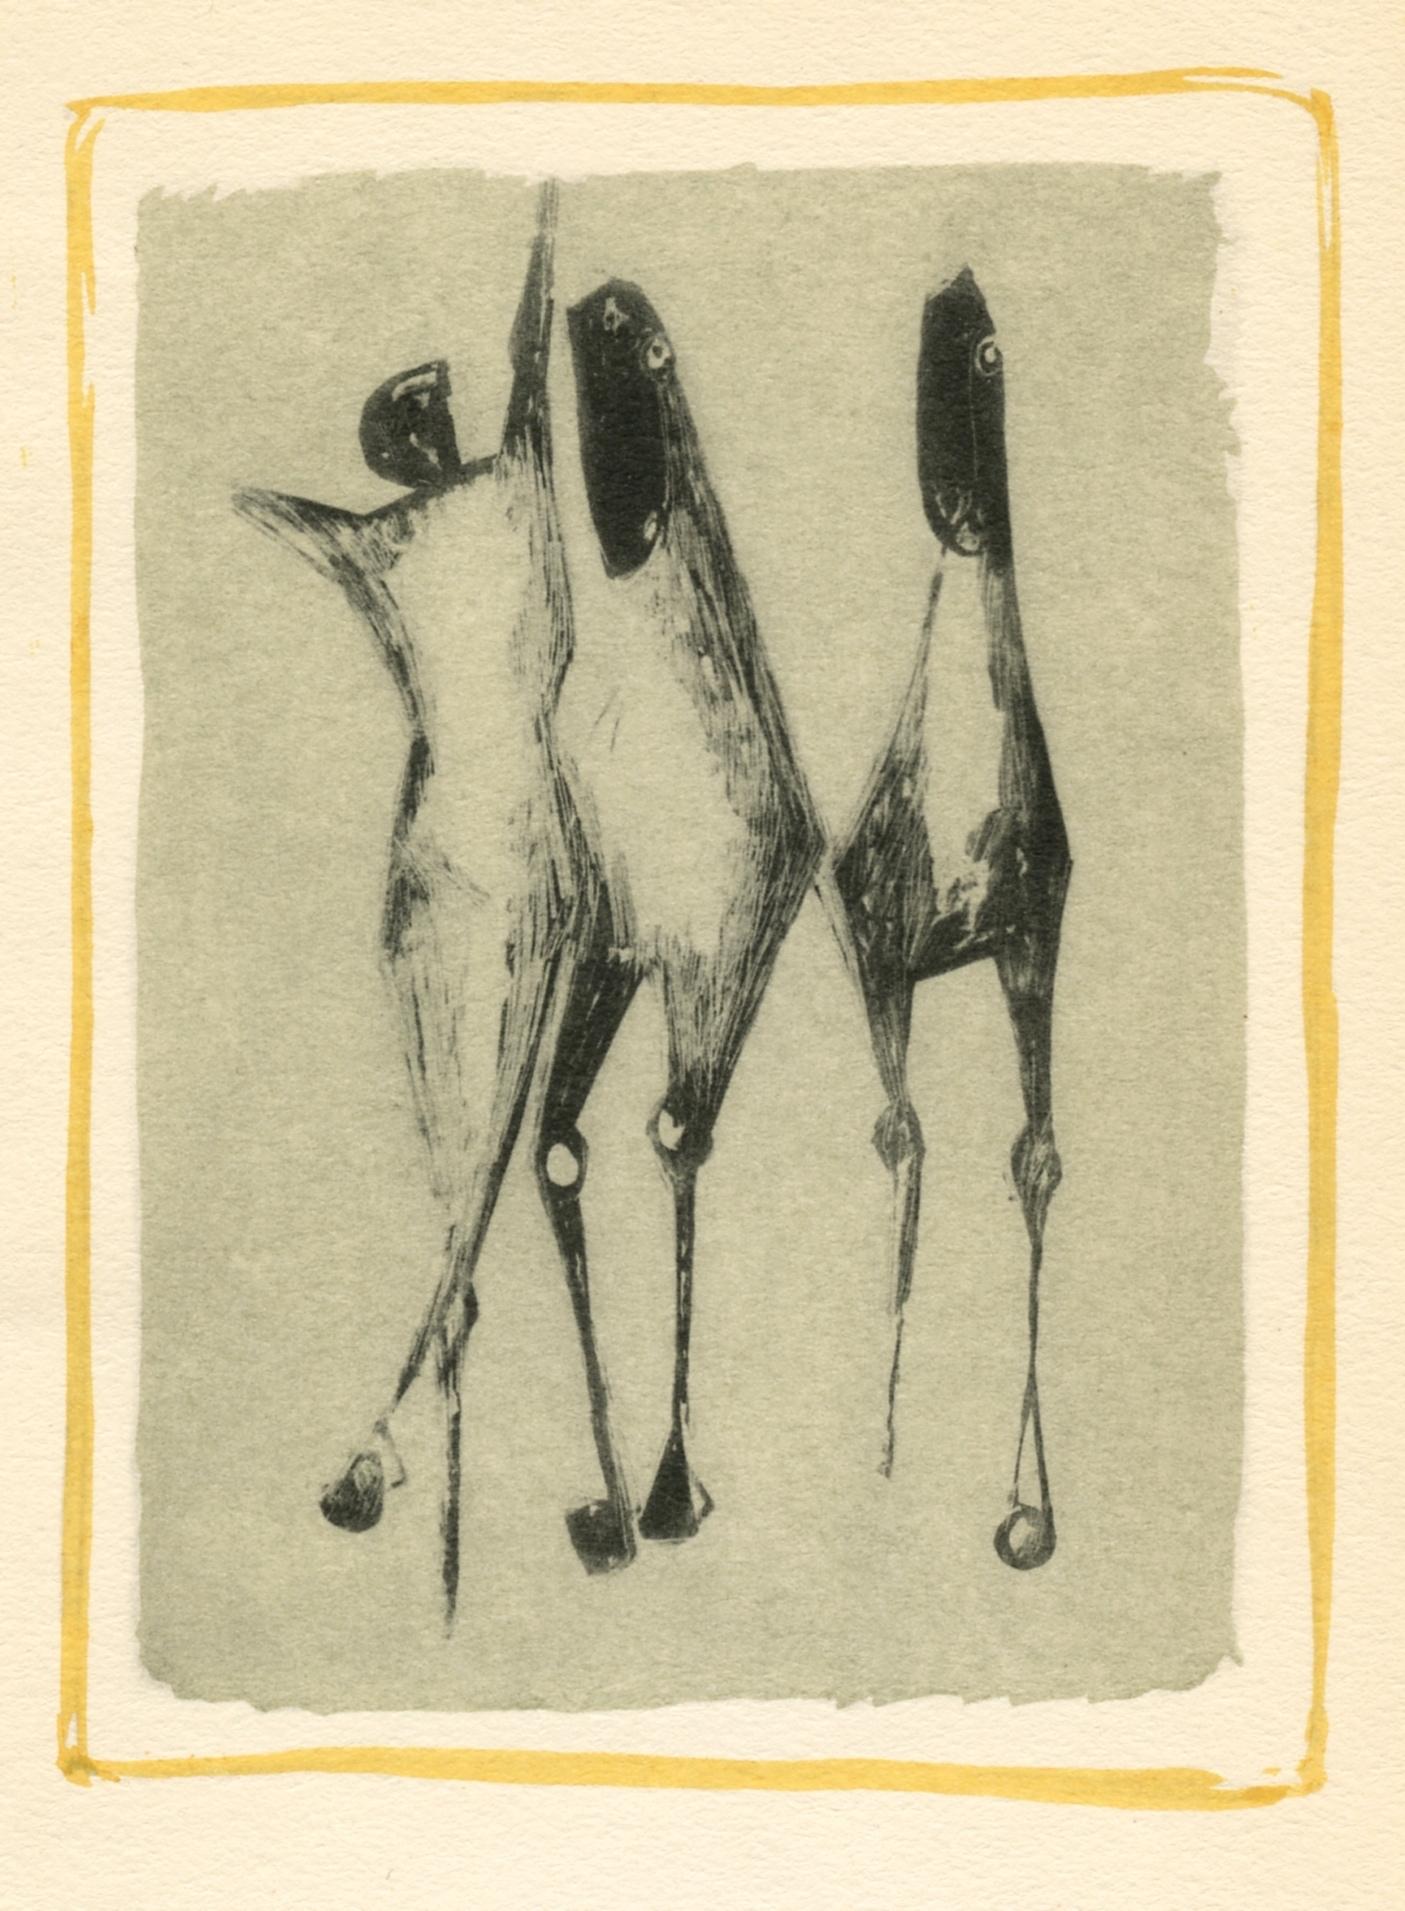 Medium: Pochoir (nach der Lithographie). Gedruckt im Atelier von Daniel Jacomet, veröffentlicht 1955 in Paris von Heinz Berggruen. Das Bild misst 5 1/4 x 4 Zoll (133 x 100 mm). Nicht unterzeichnet.